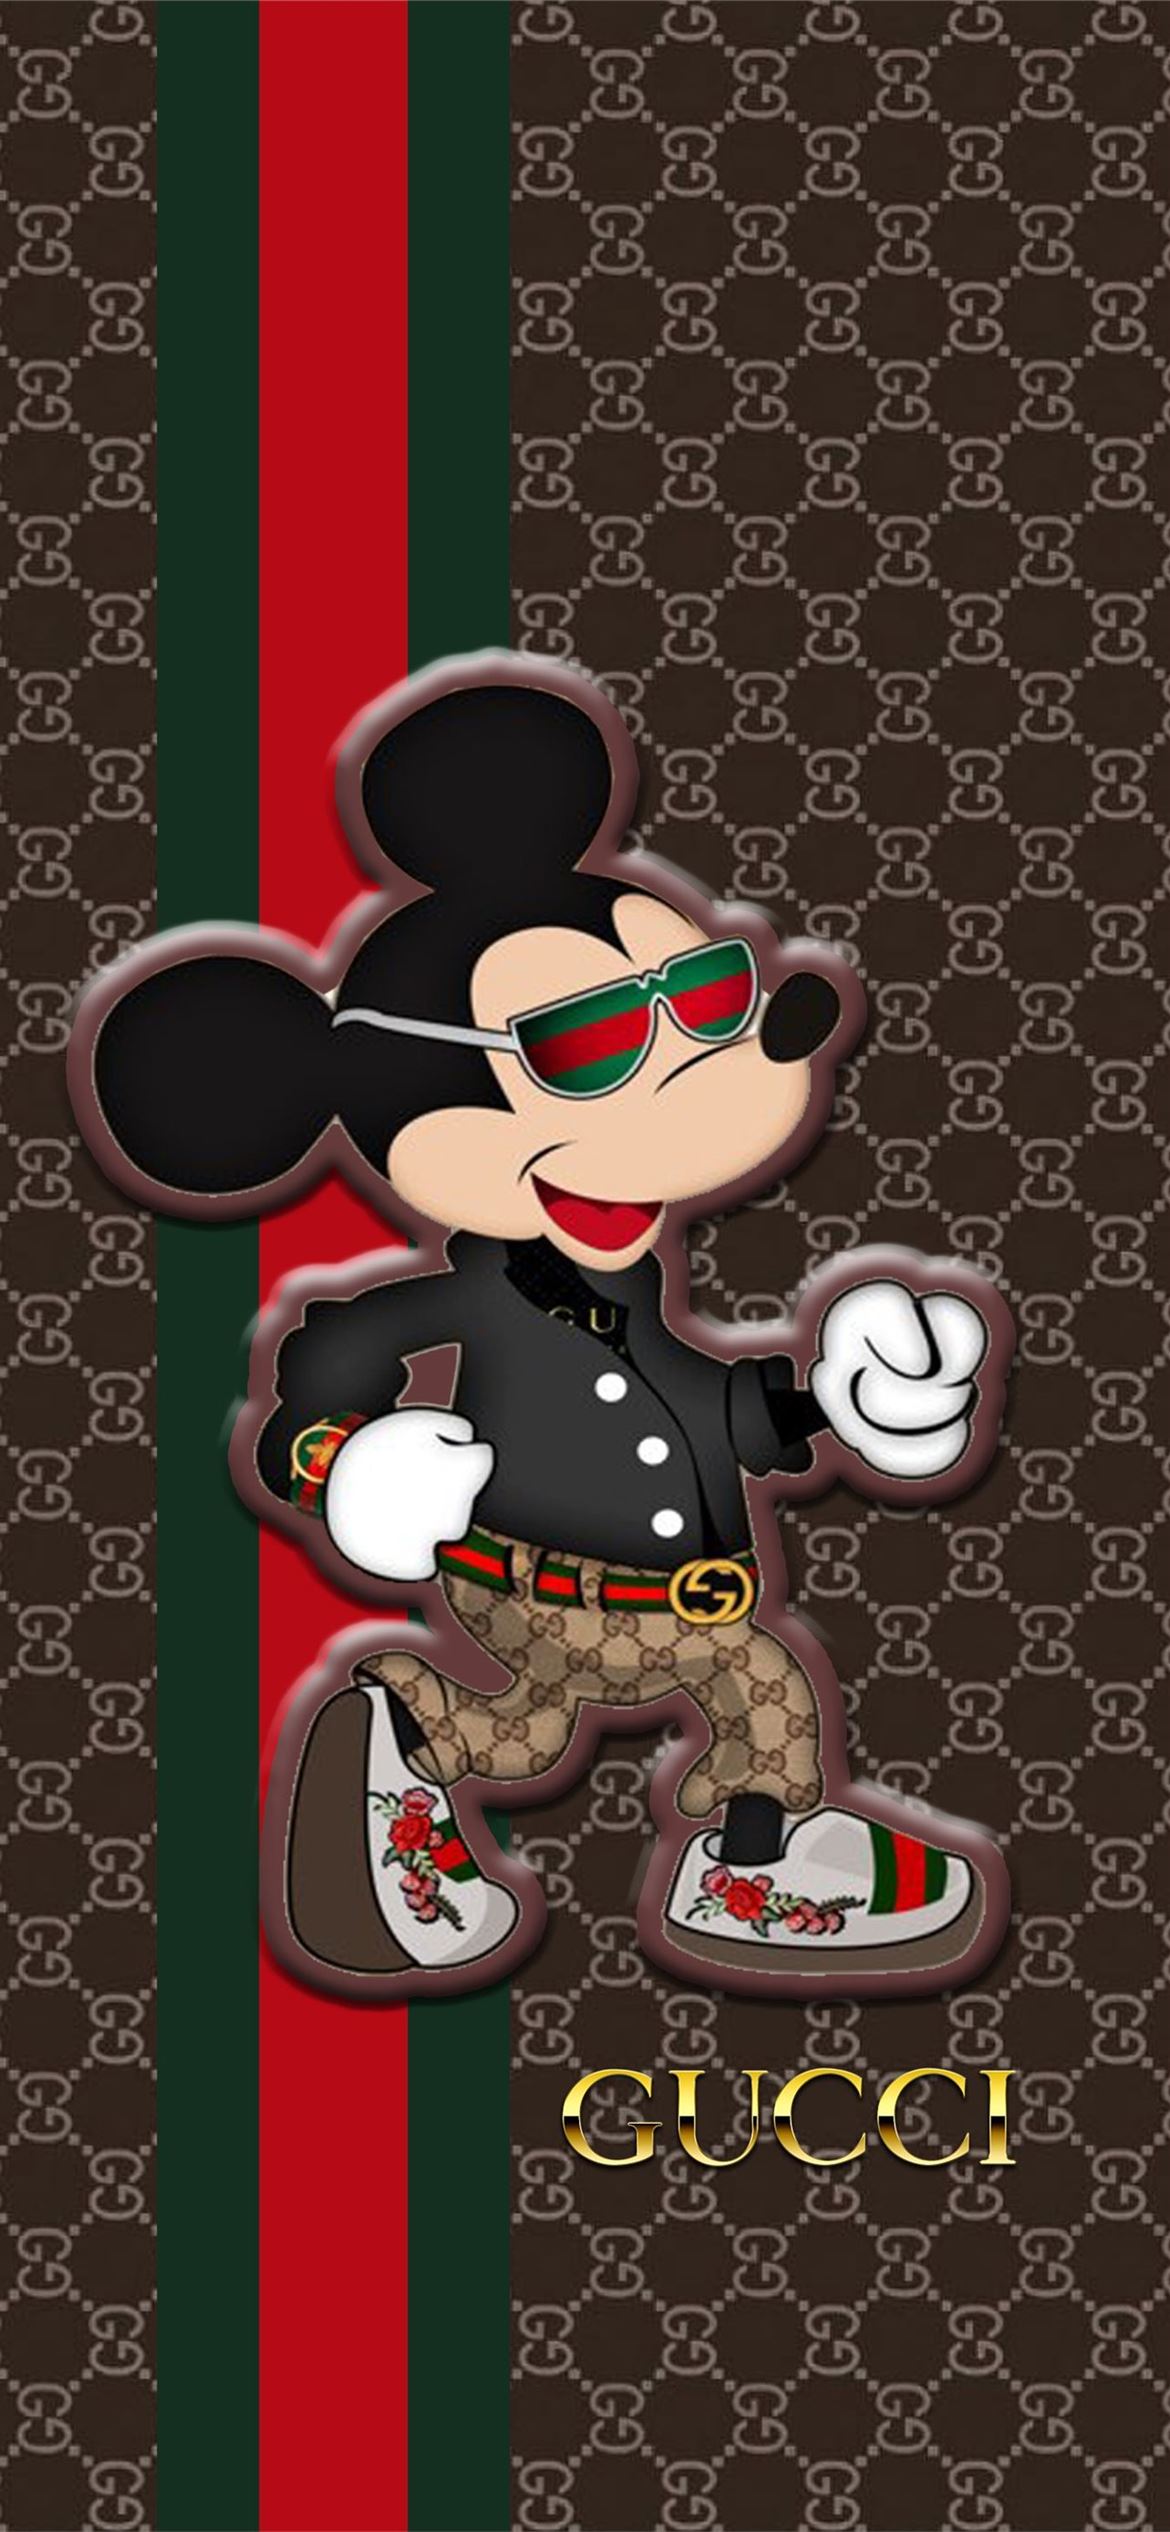 Hình nền Gucci Mickey Mouse cho iPhone (Gucci Mickey Mouse Top Free Gucci Mickey Mouse Bac... iPhone ...): Hình nền Gucci Mickey Mouse cho iPhone là một sự kết hợp giữa phong cách Gucci sang trọng và nhân vật Mickey Mouse đáng yêu. Sự kết hợp này sẽ mang lại cho bạn một trải nghiệm mới lạ và độc đáo trong việc trang trí điện thoại của mình. Hãy truy cập ngay để tải về hình nền đẹp và miễn phí này. 